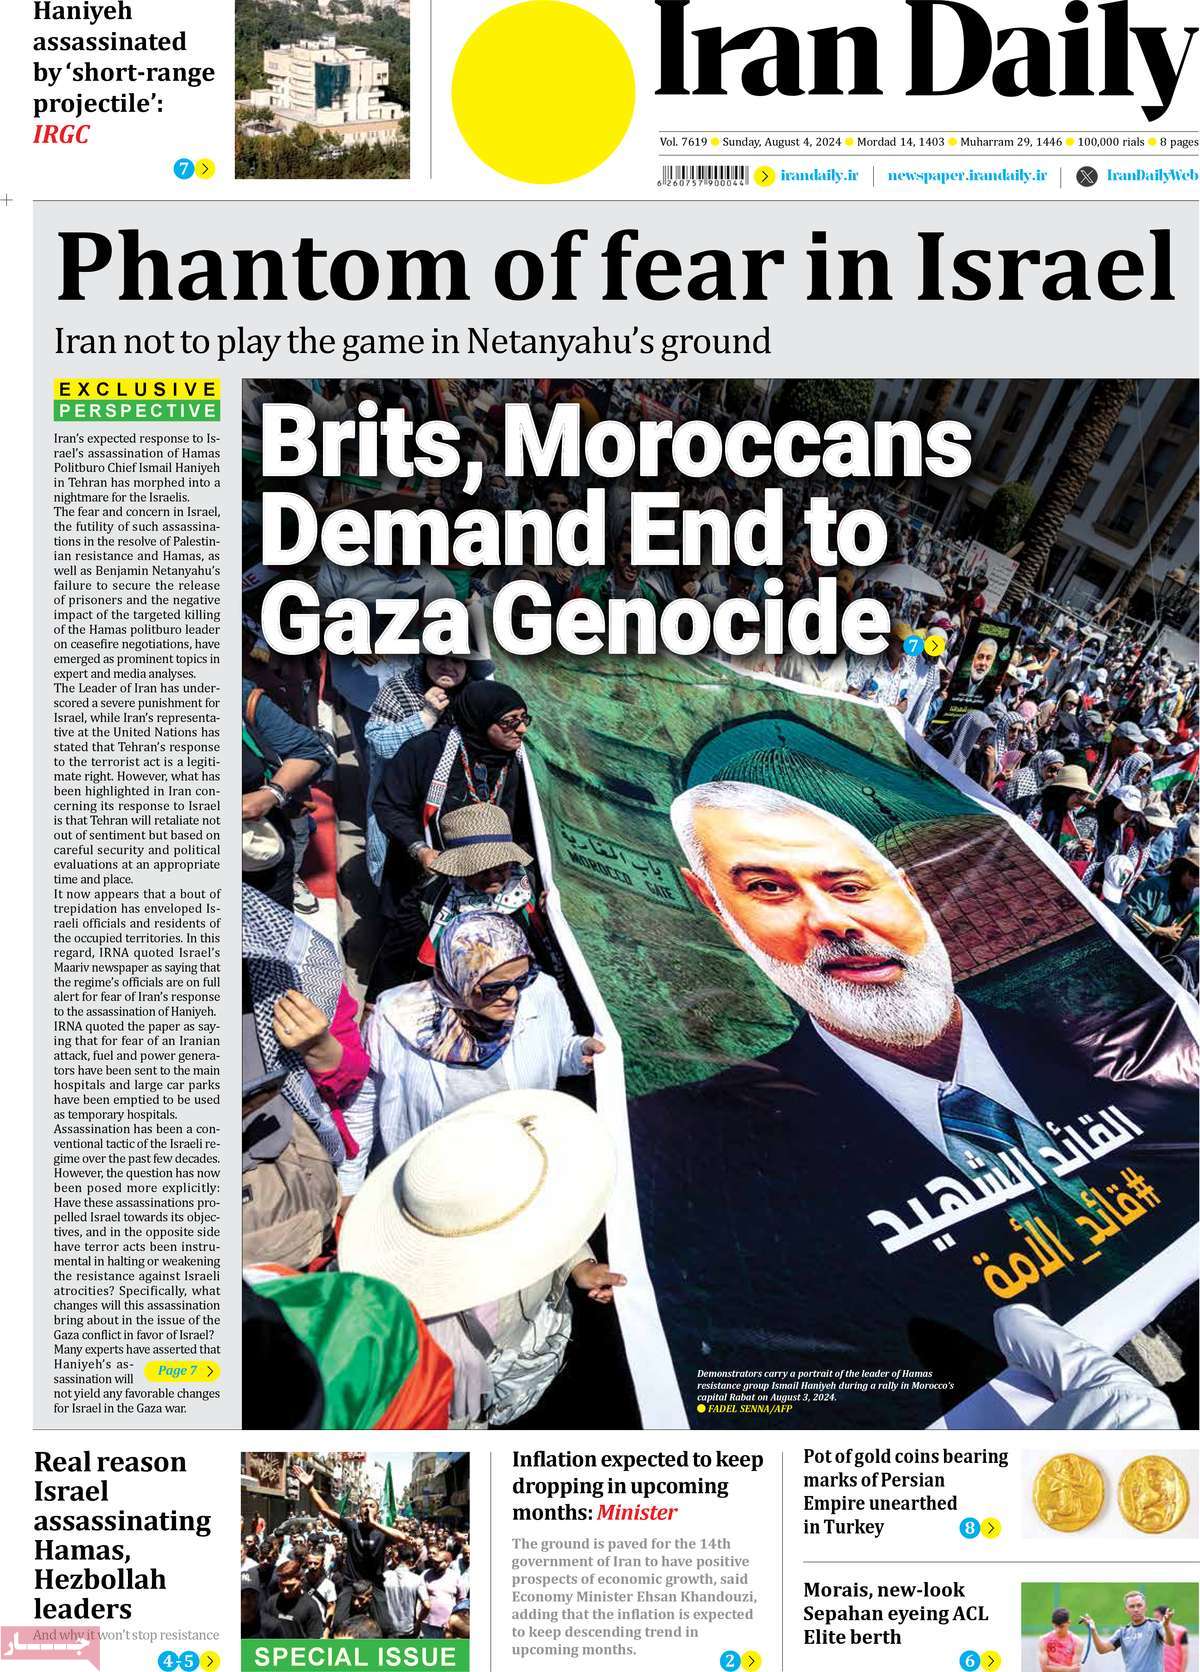 صفحه اول روزنامه Iran Daily